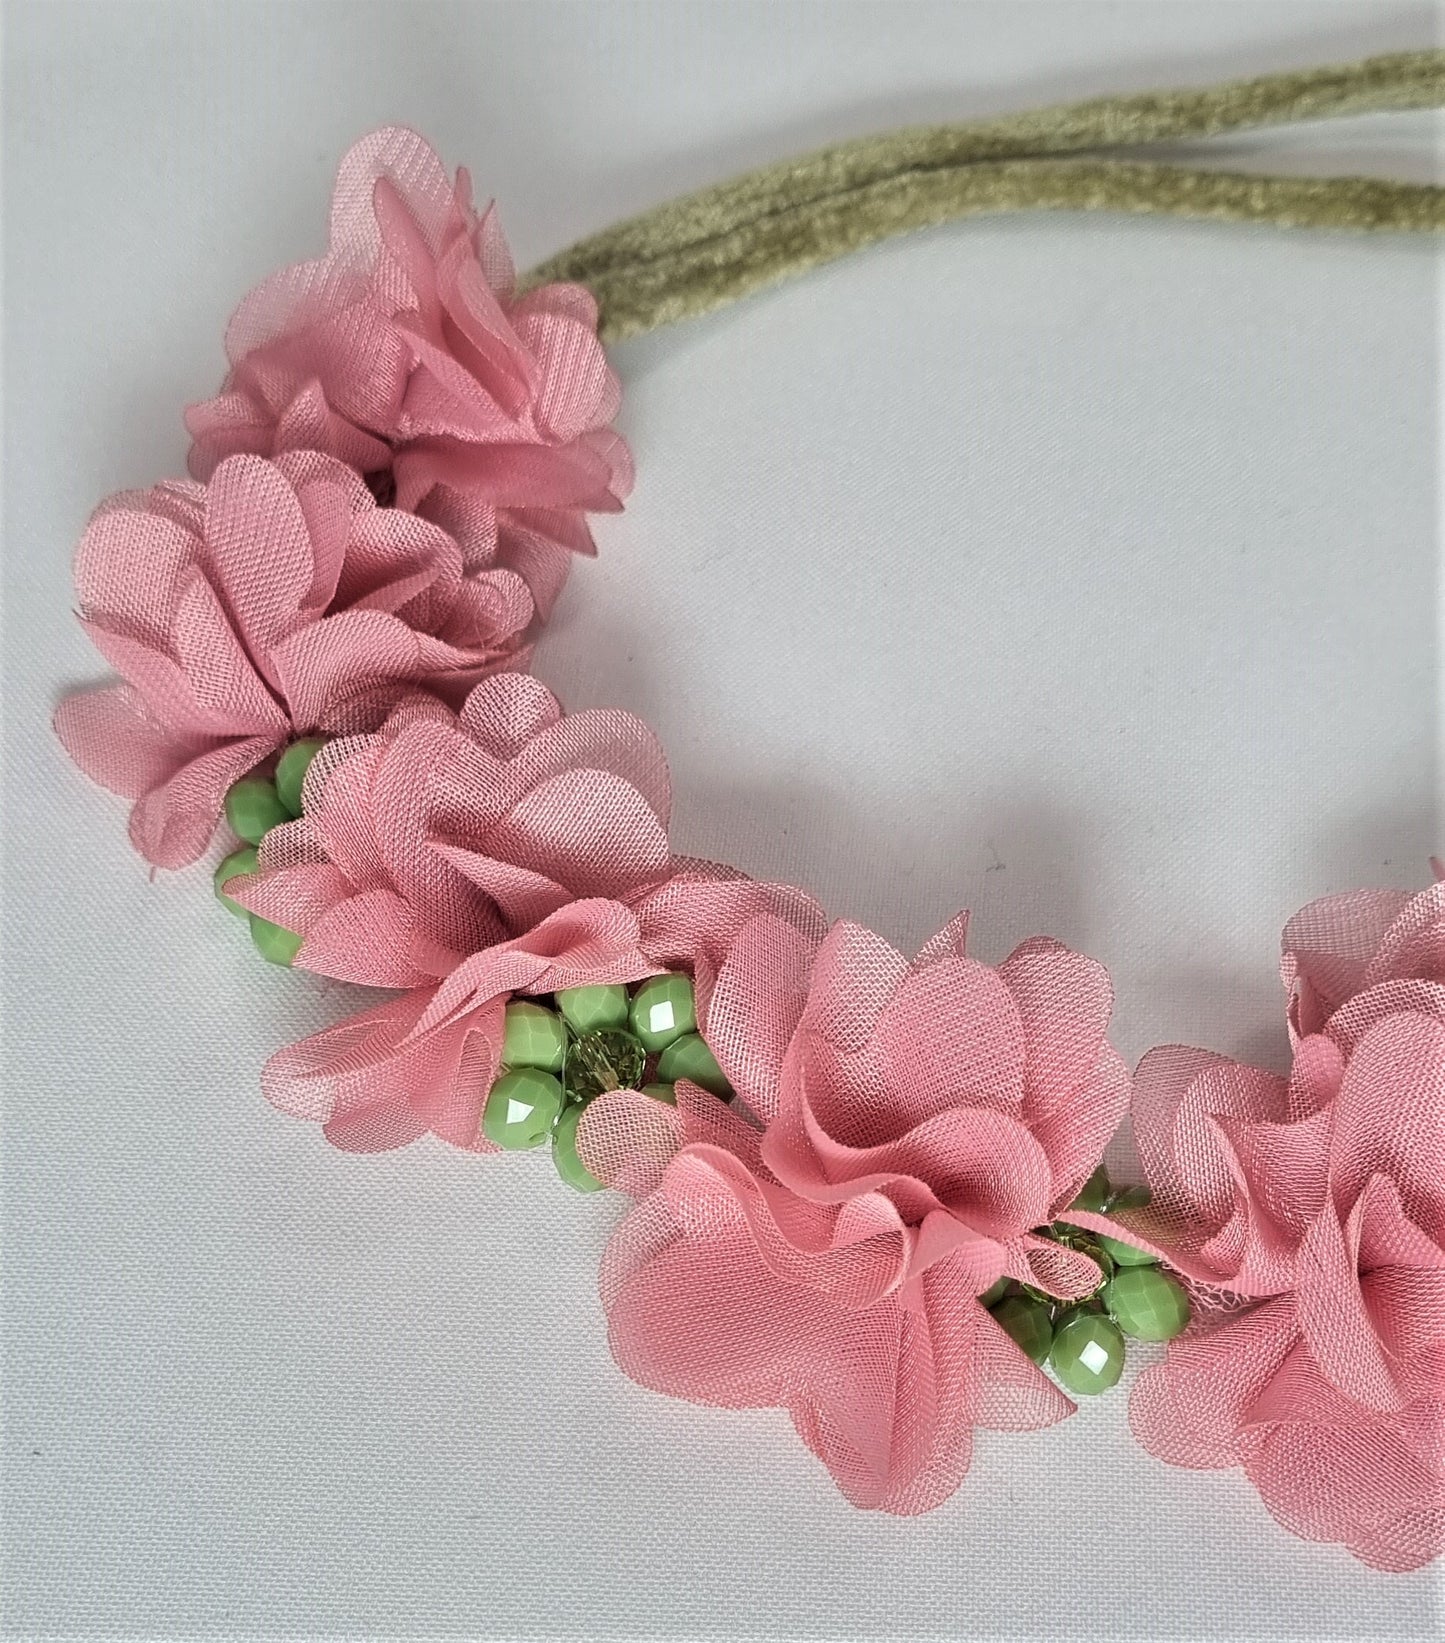 Collana LE ROSE .020 cordoncino velluto verde bosco, fiori tessuto rosa intenso e fiori in mezzi cristalli verde.